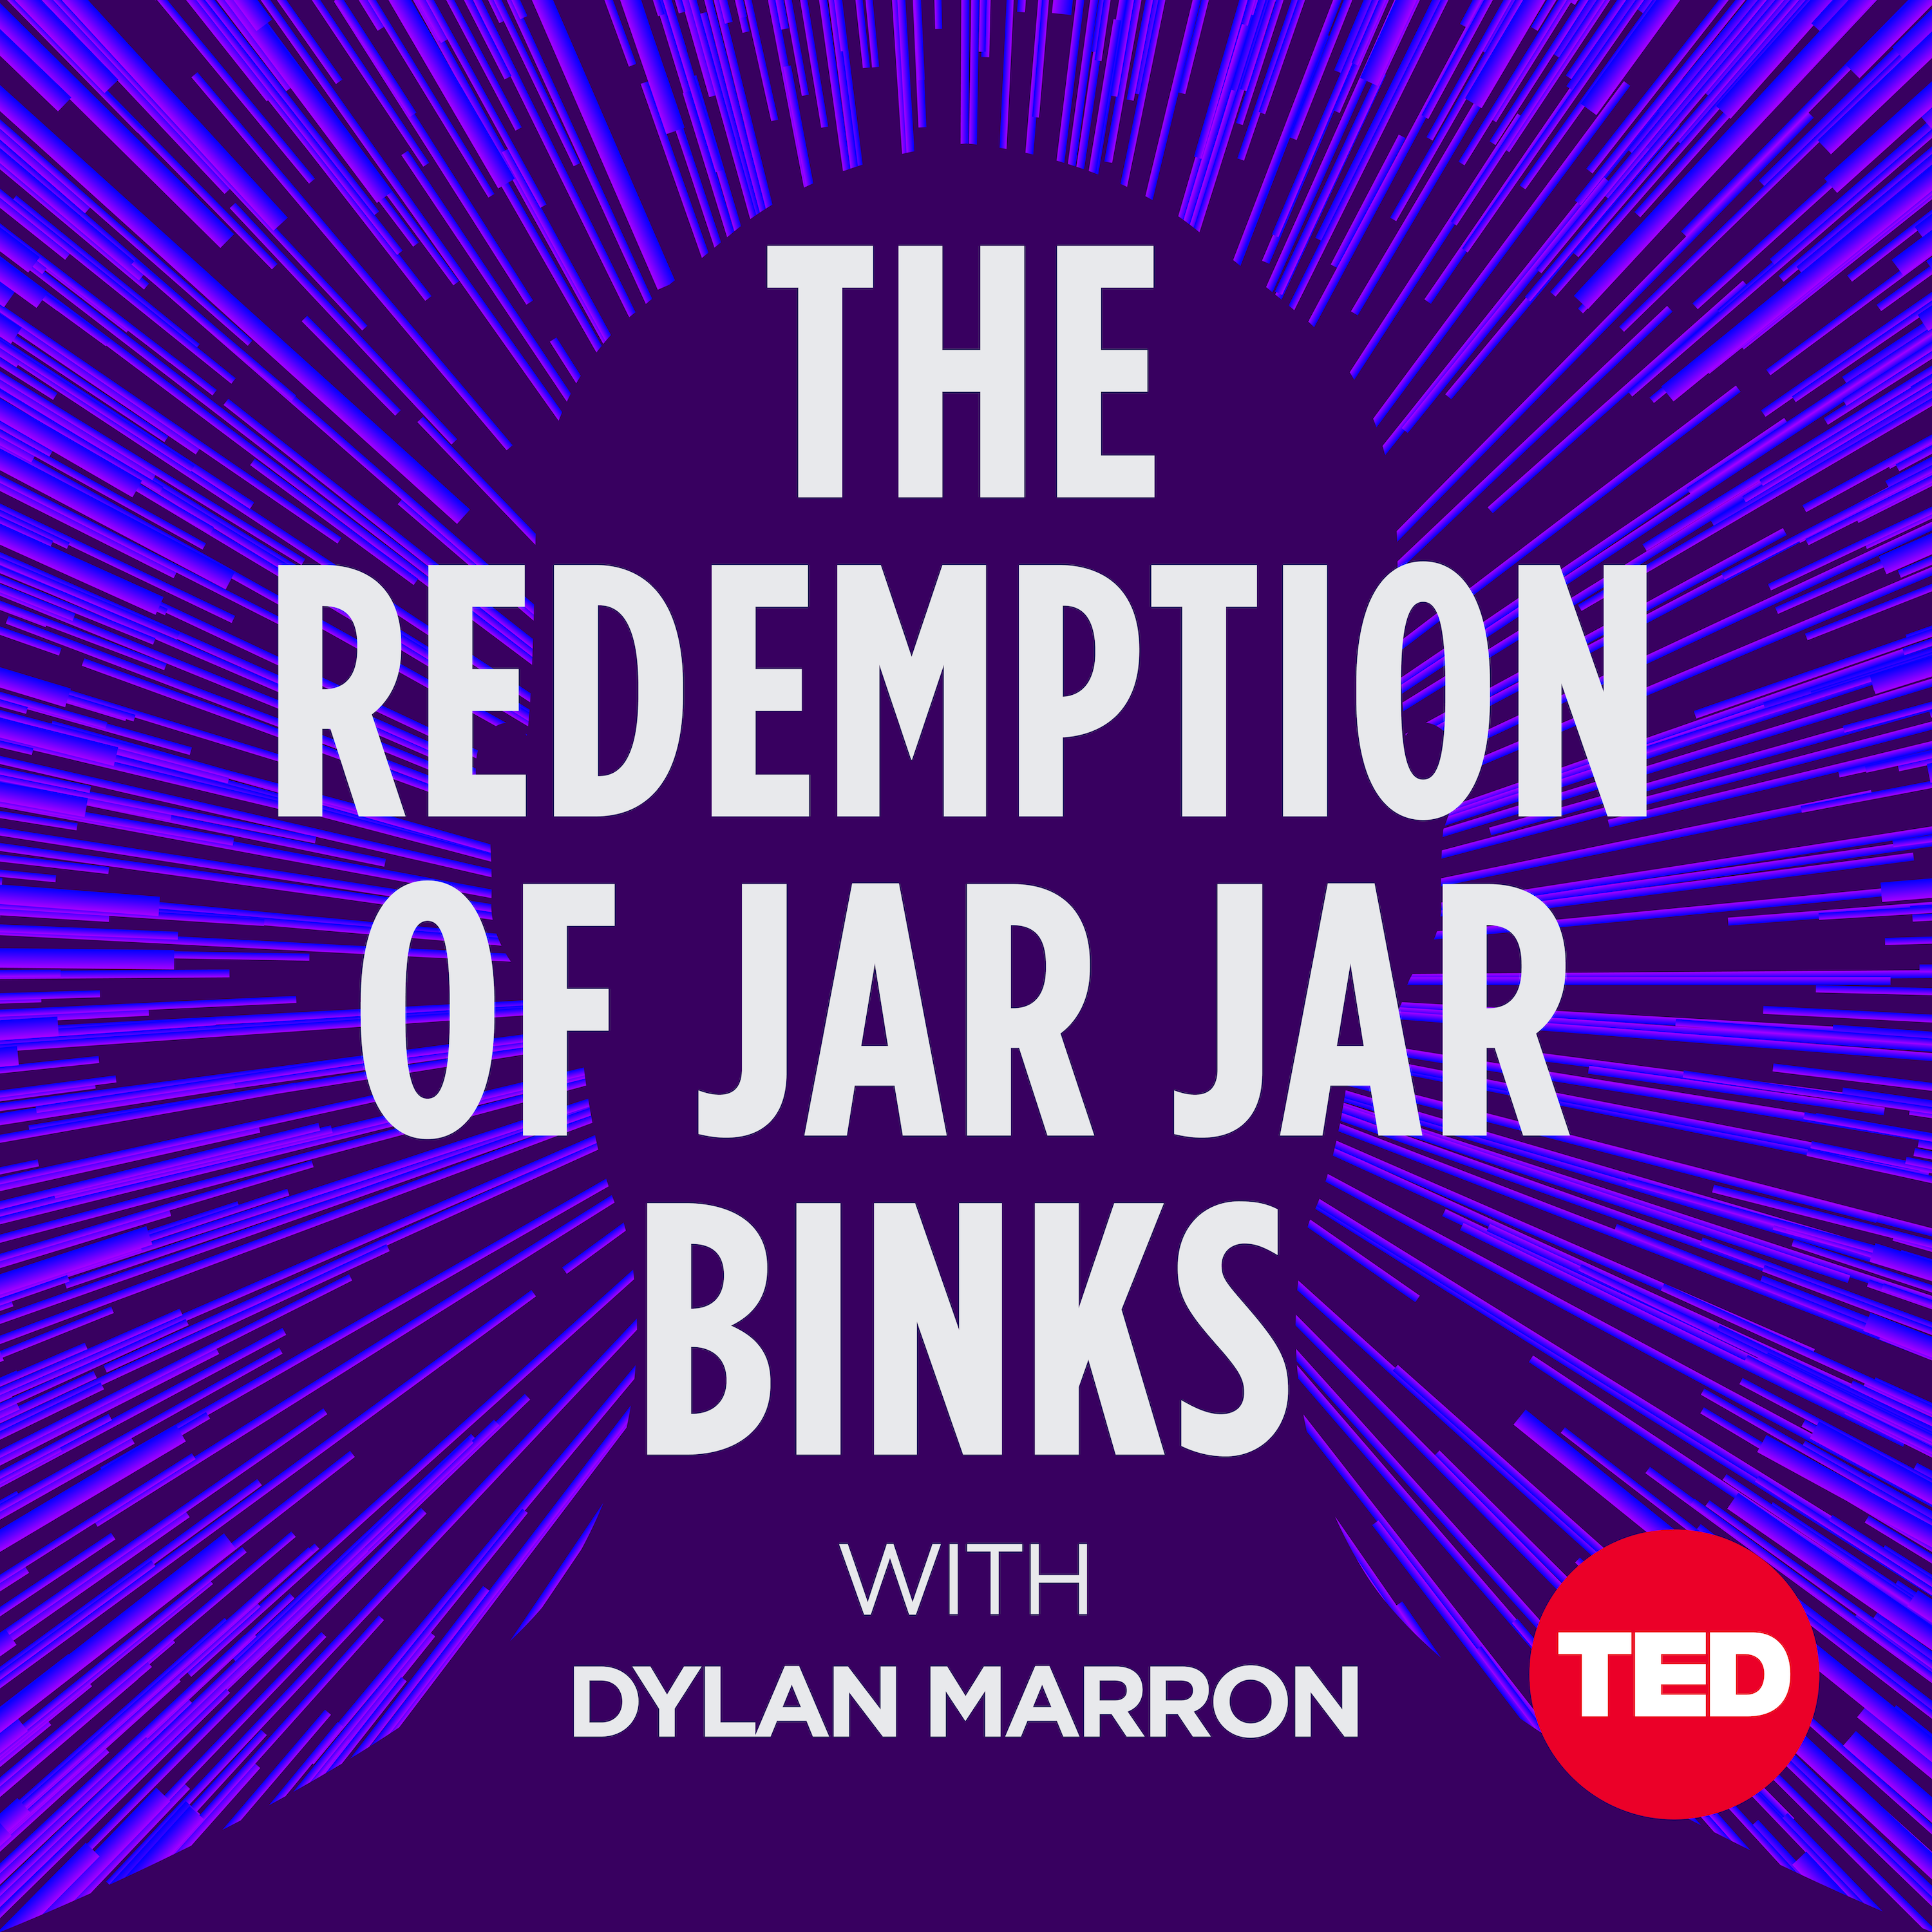 The Redemption of Jar Jar Binks podcast show image